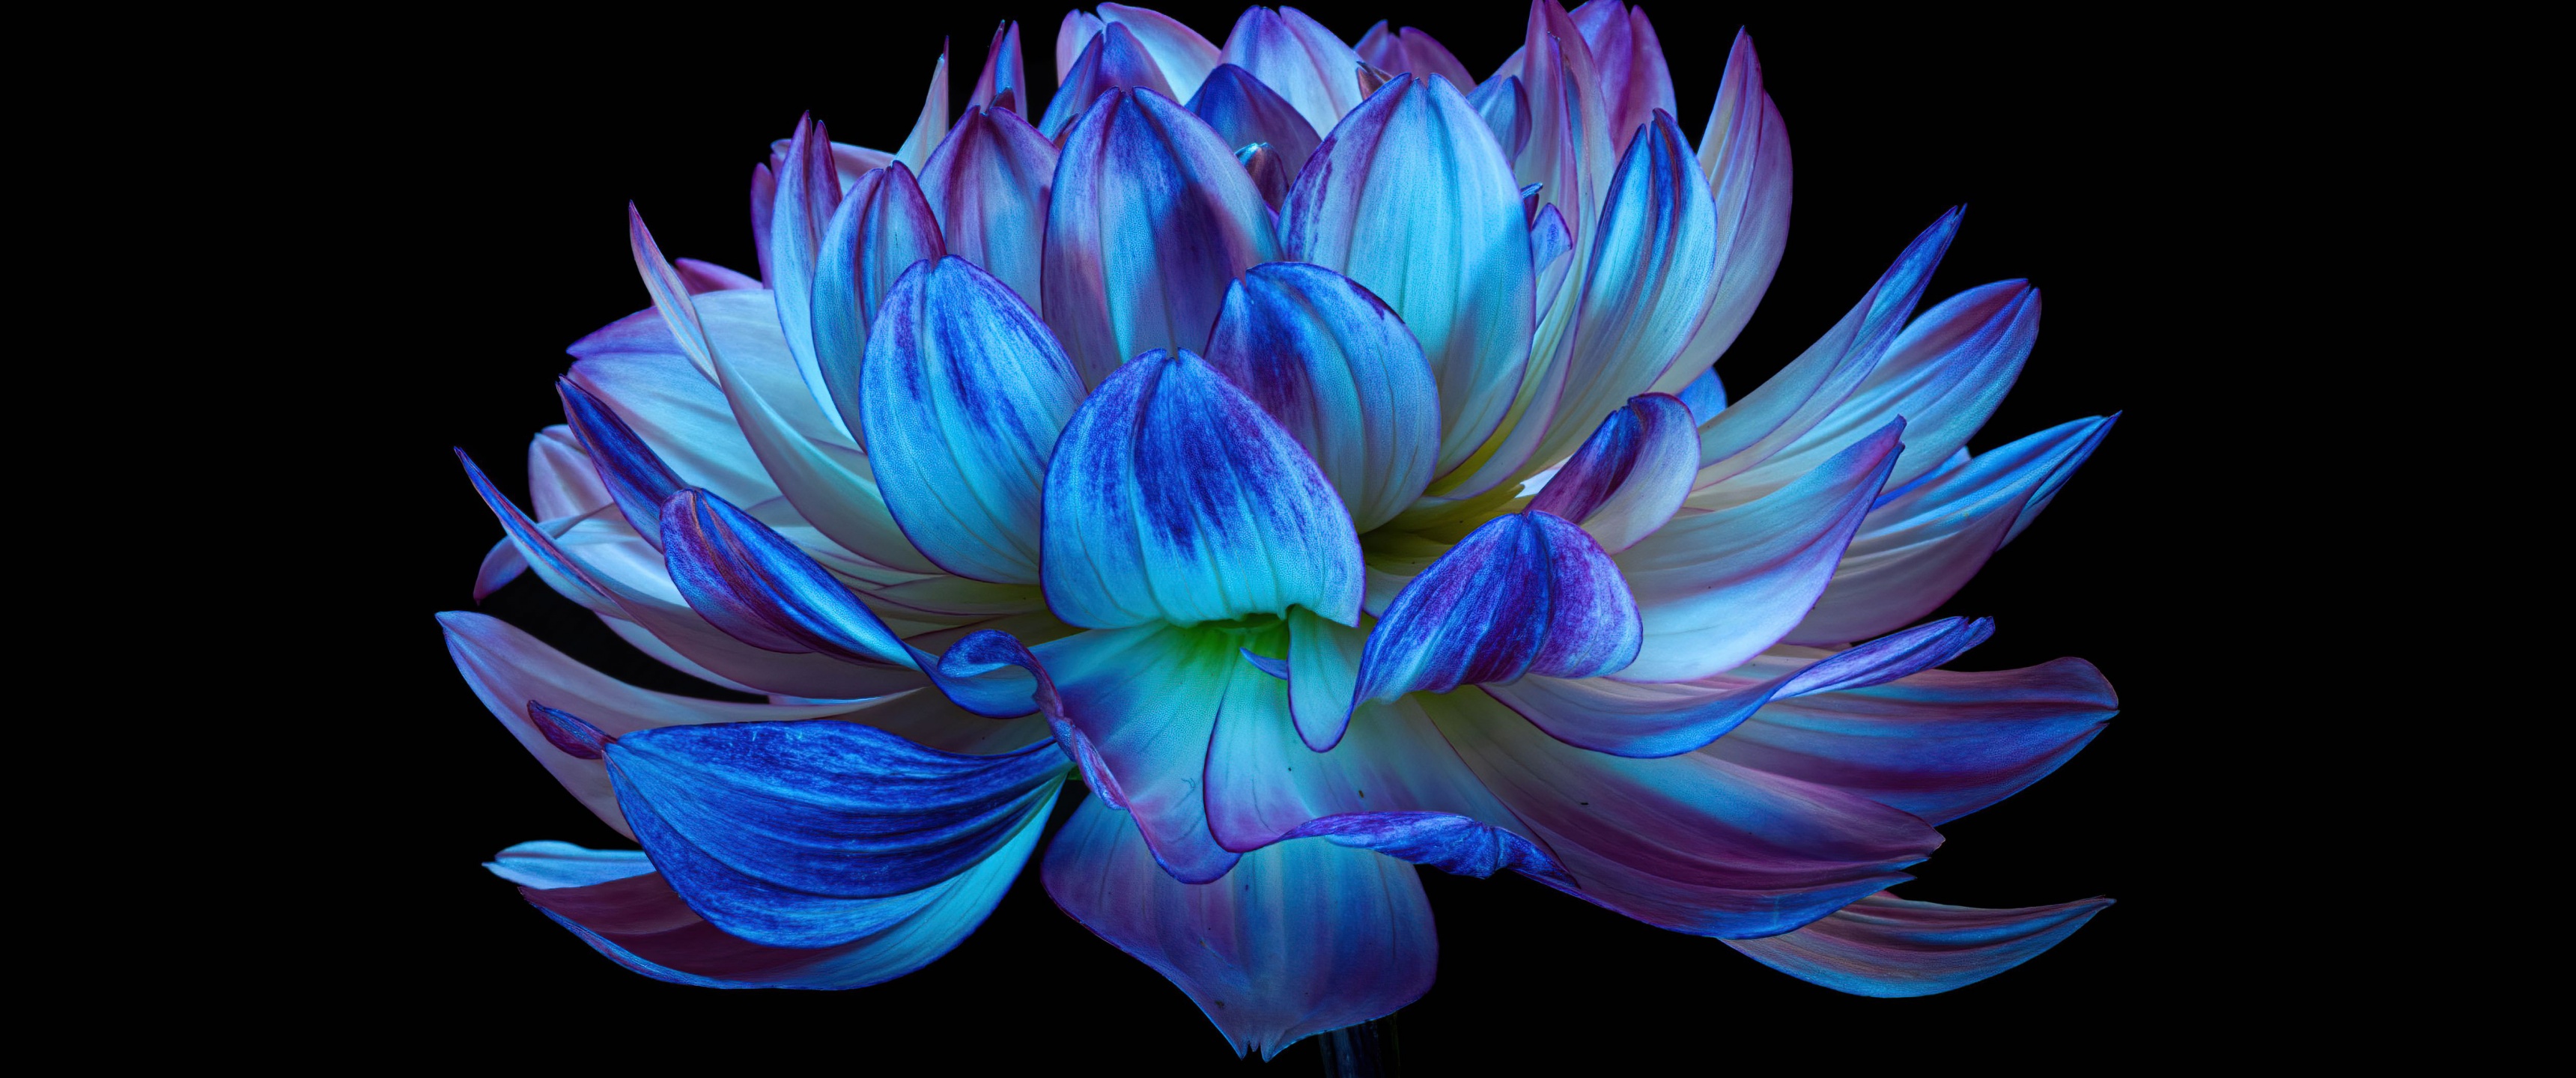 Hoa Dahlia là một trong những loài hoa đẹp nhất và độc đáo nhất. Với nền 4K sắc nét, hình ảnh hoa Dahlia sẽ làm cho điện thoại của bạn trở nên hoàn hảo và ấn tượng hơn.